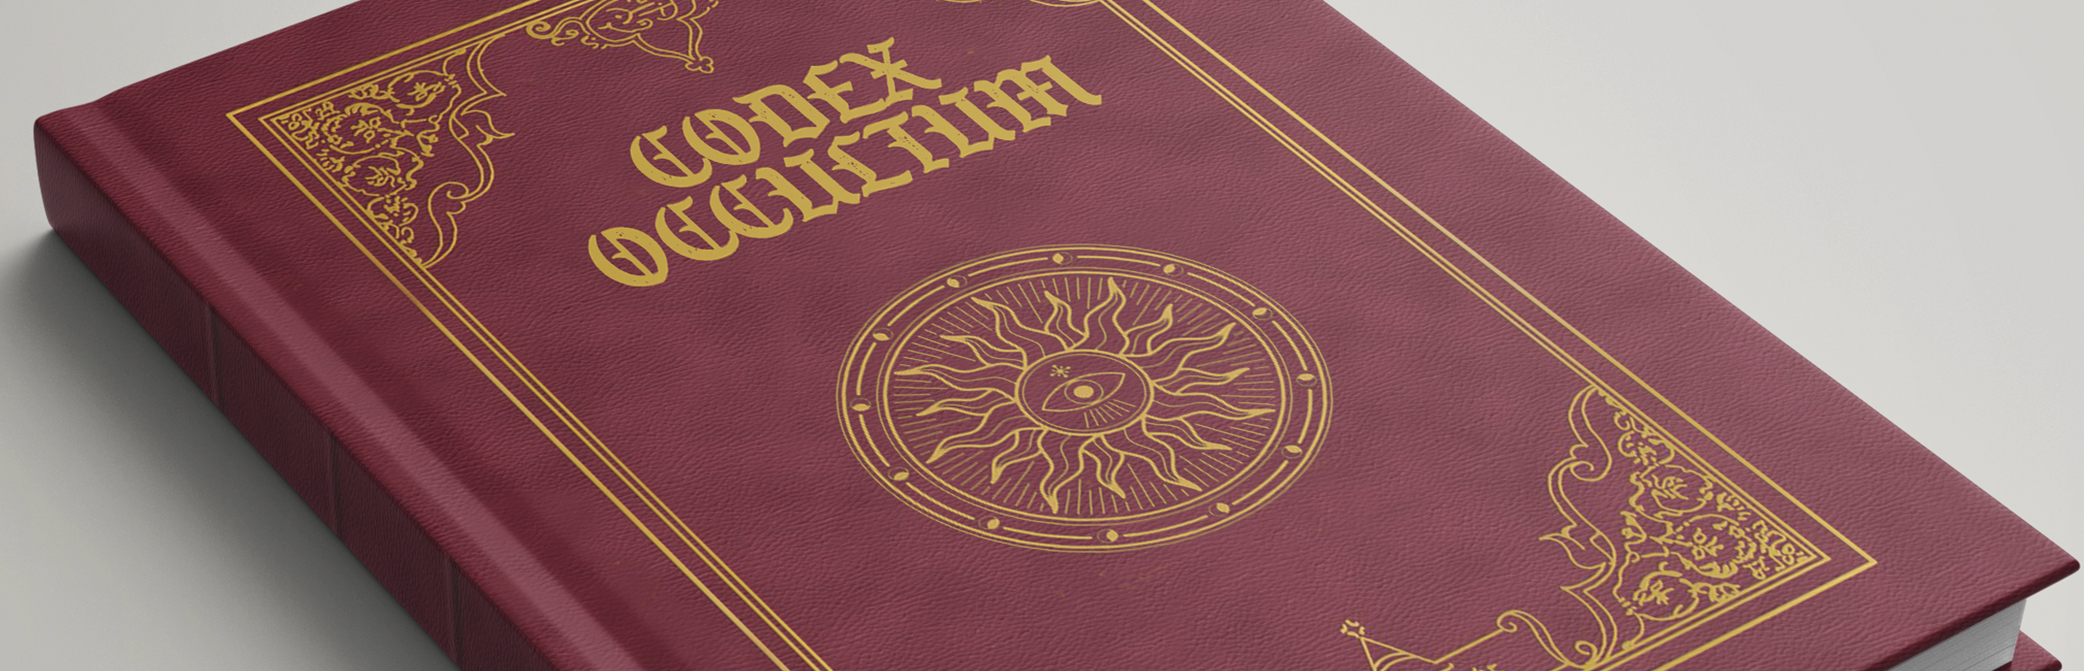 Codex Occultum - Quickstart